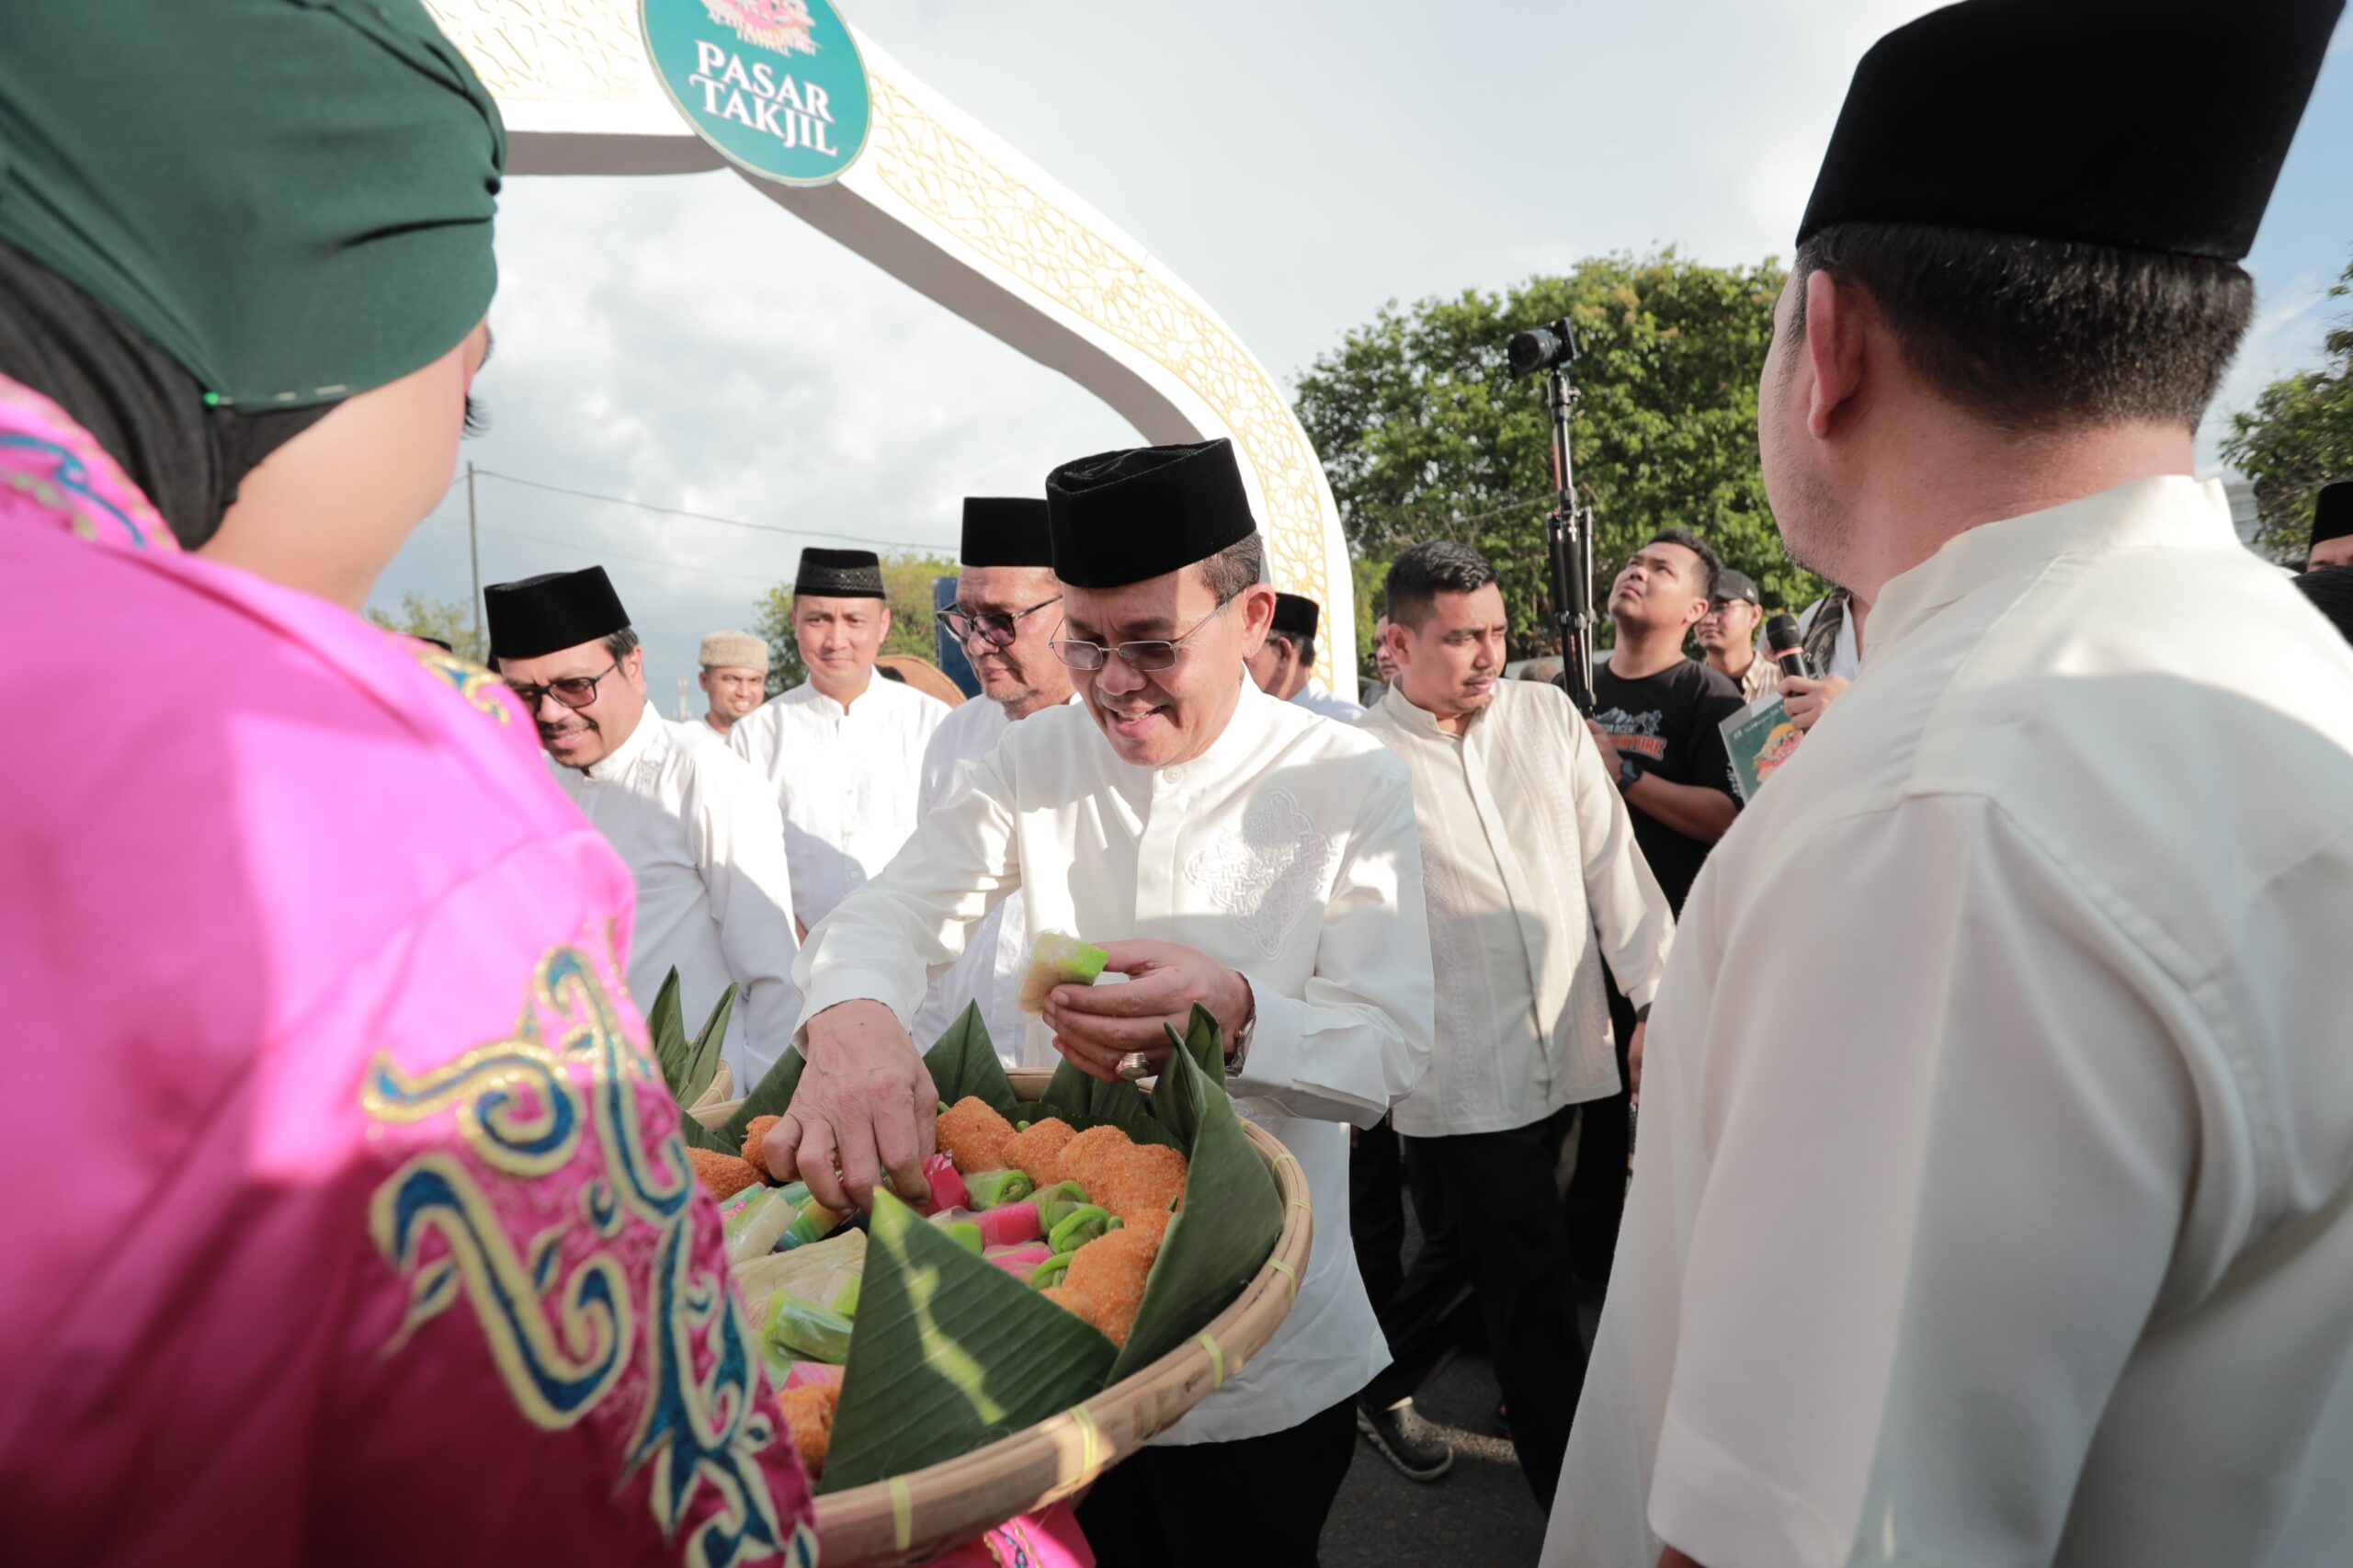 Aceh Ramadhan Festival di Buka, Pj Wali Kota Sebut Ajang Promosi Wisata Kota Banda Aceh